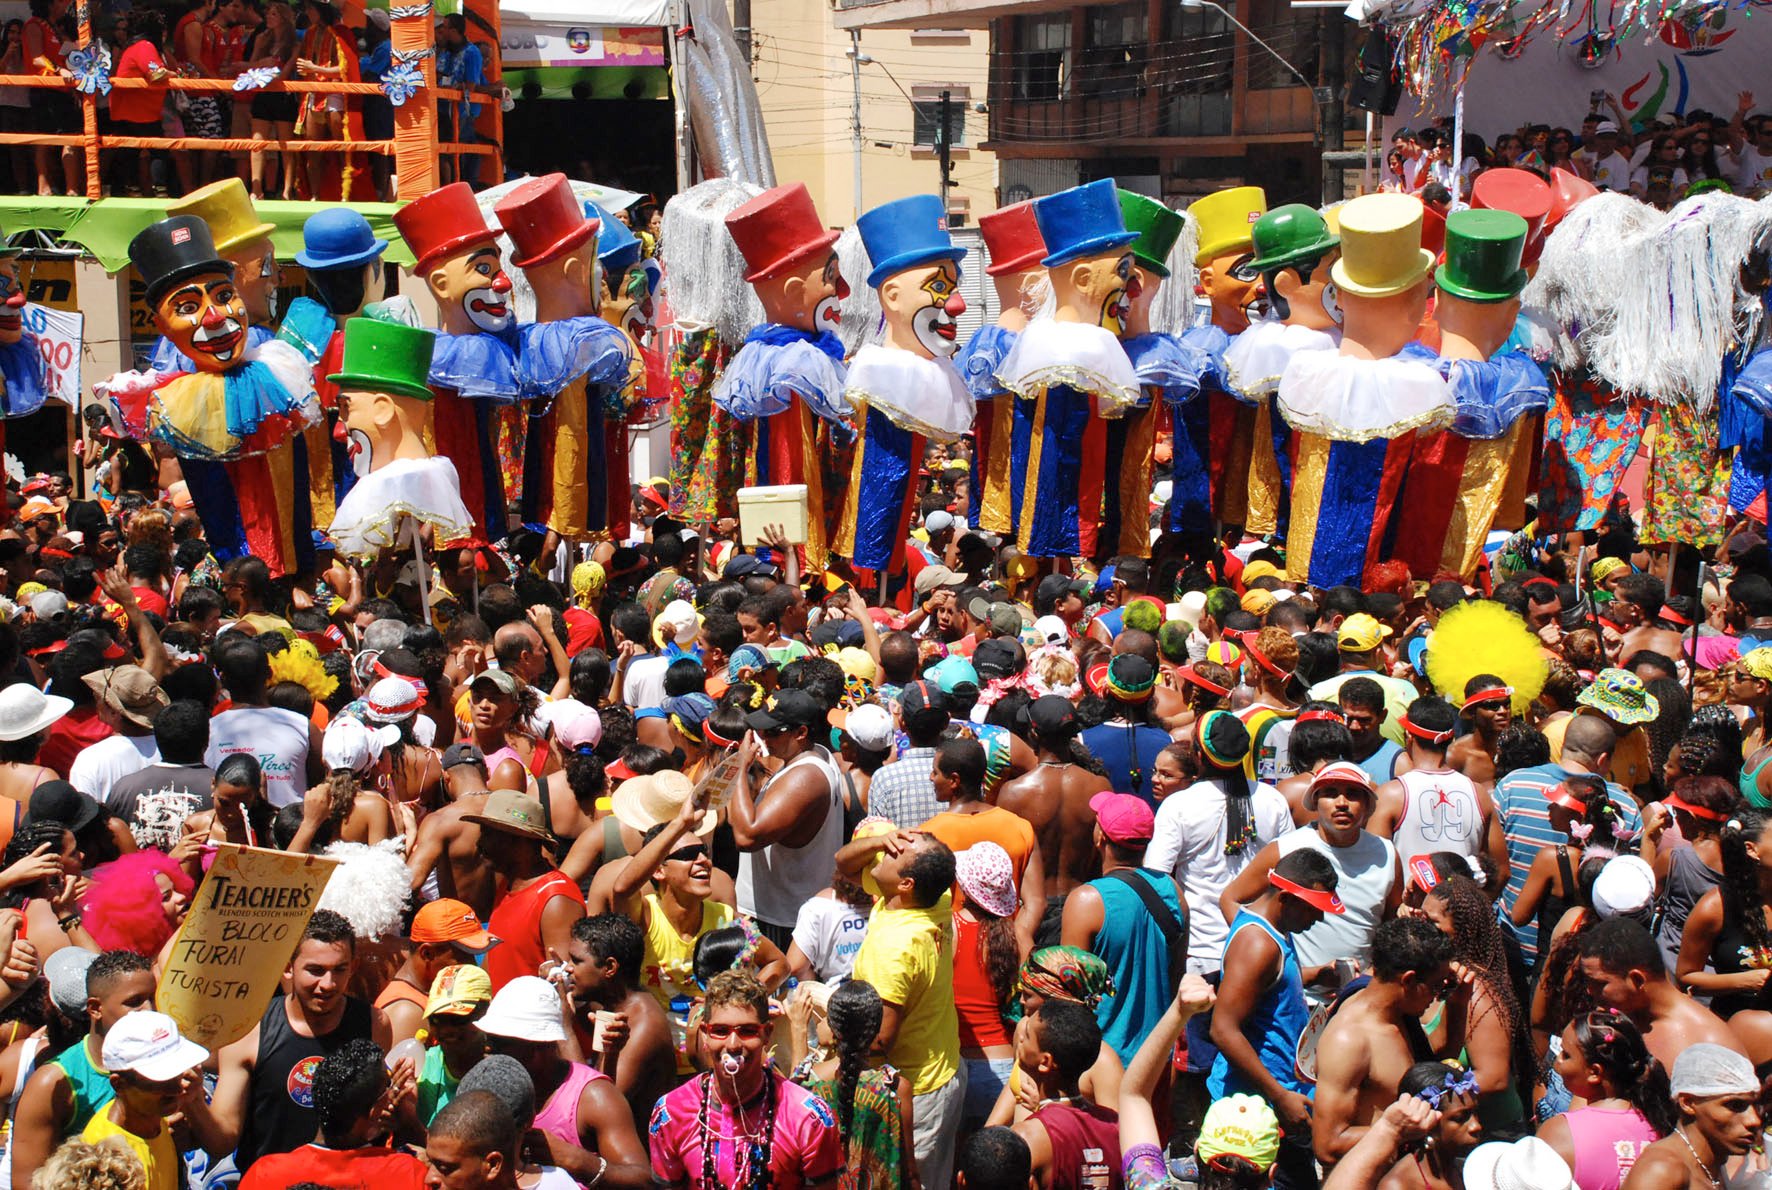 Viagens: Hospedagem barata em Recife e Olinda para o Carnaval 2014